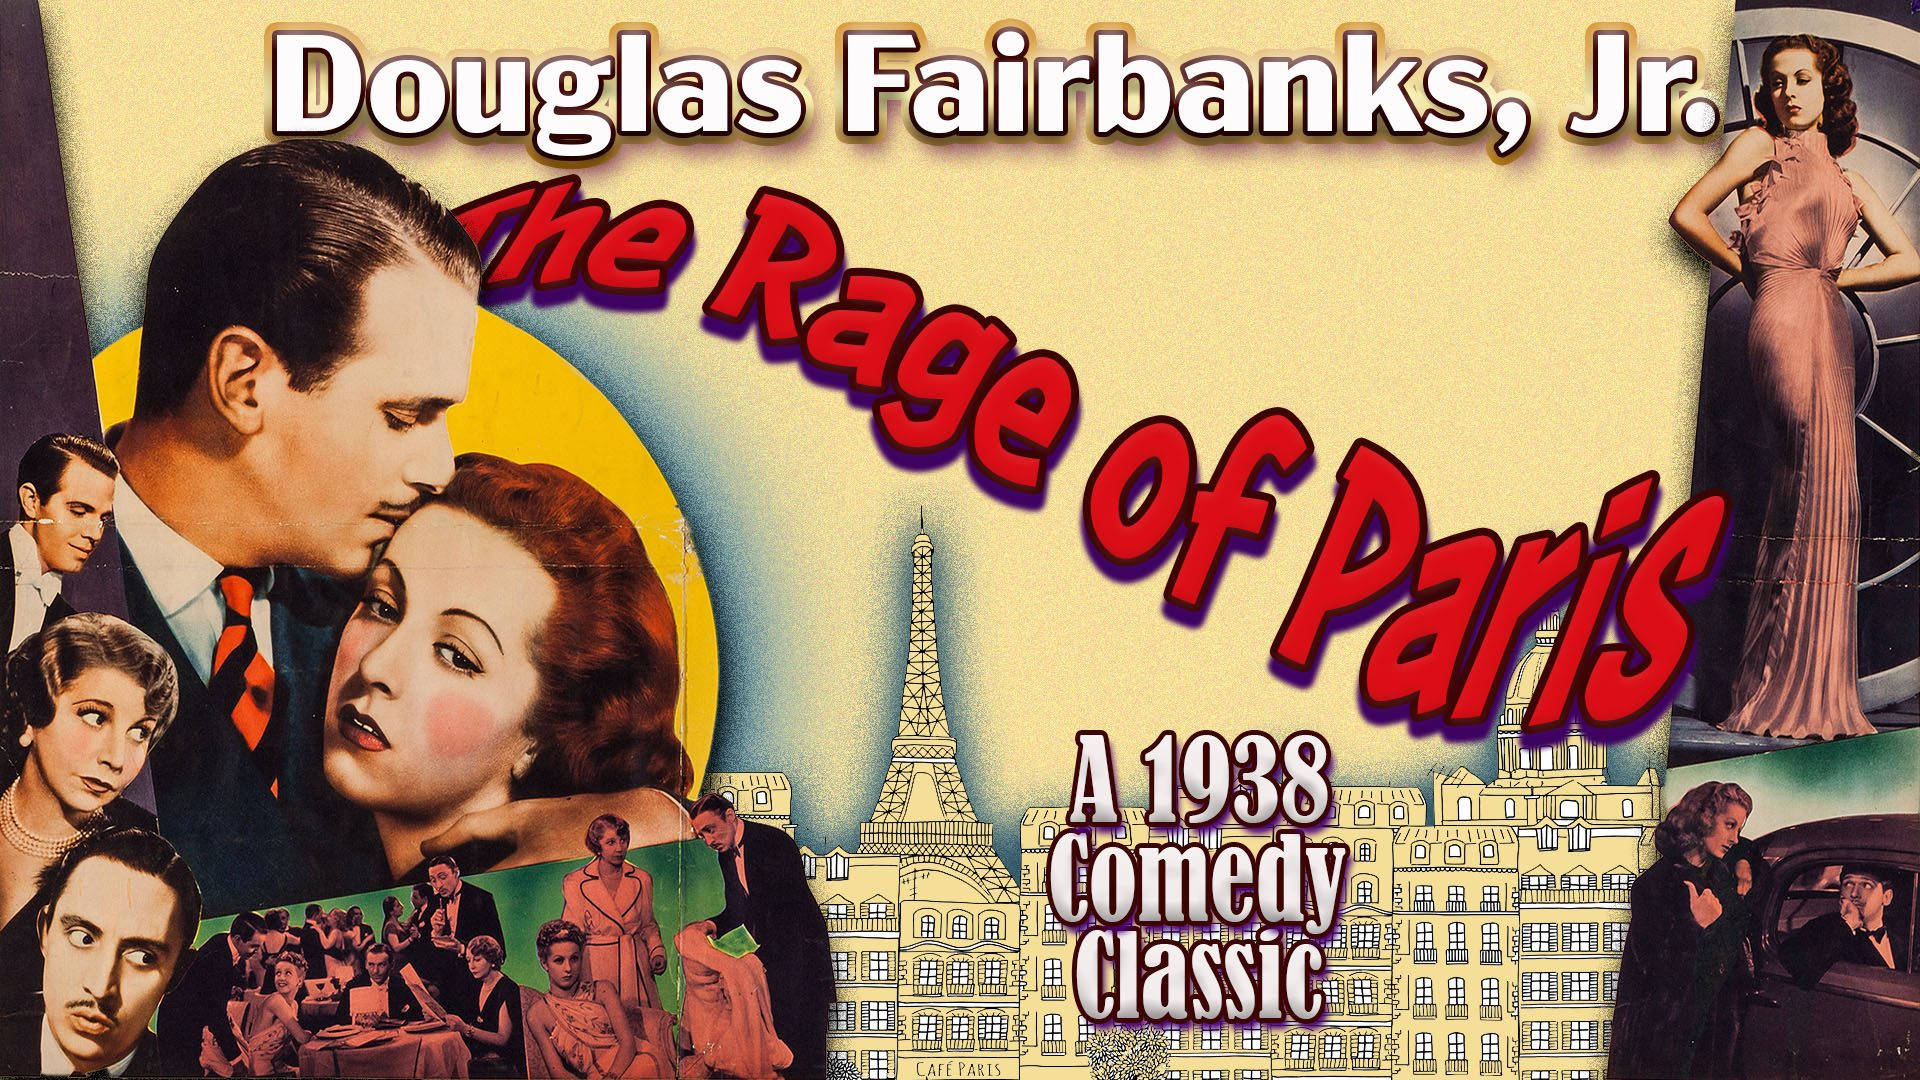 Douglas Fairbanks 